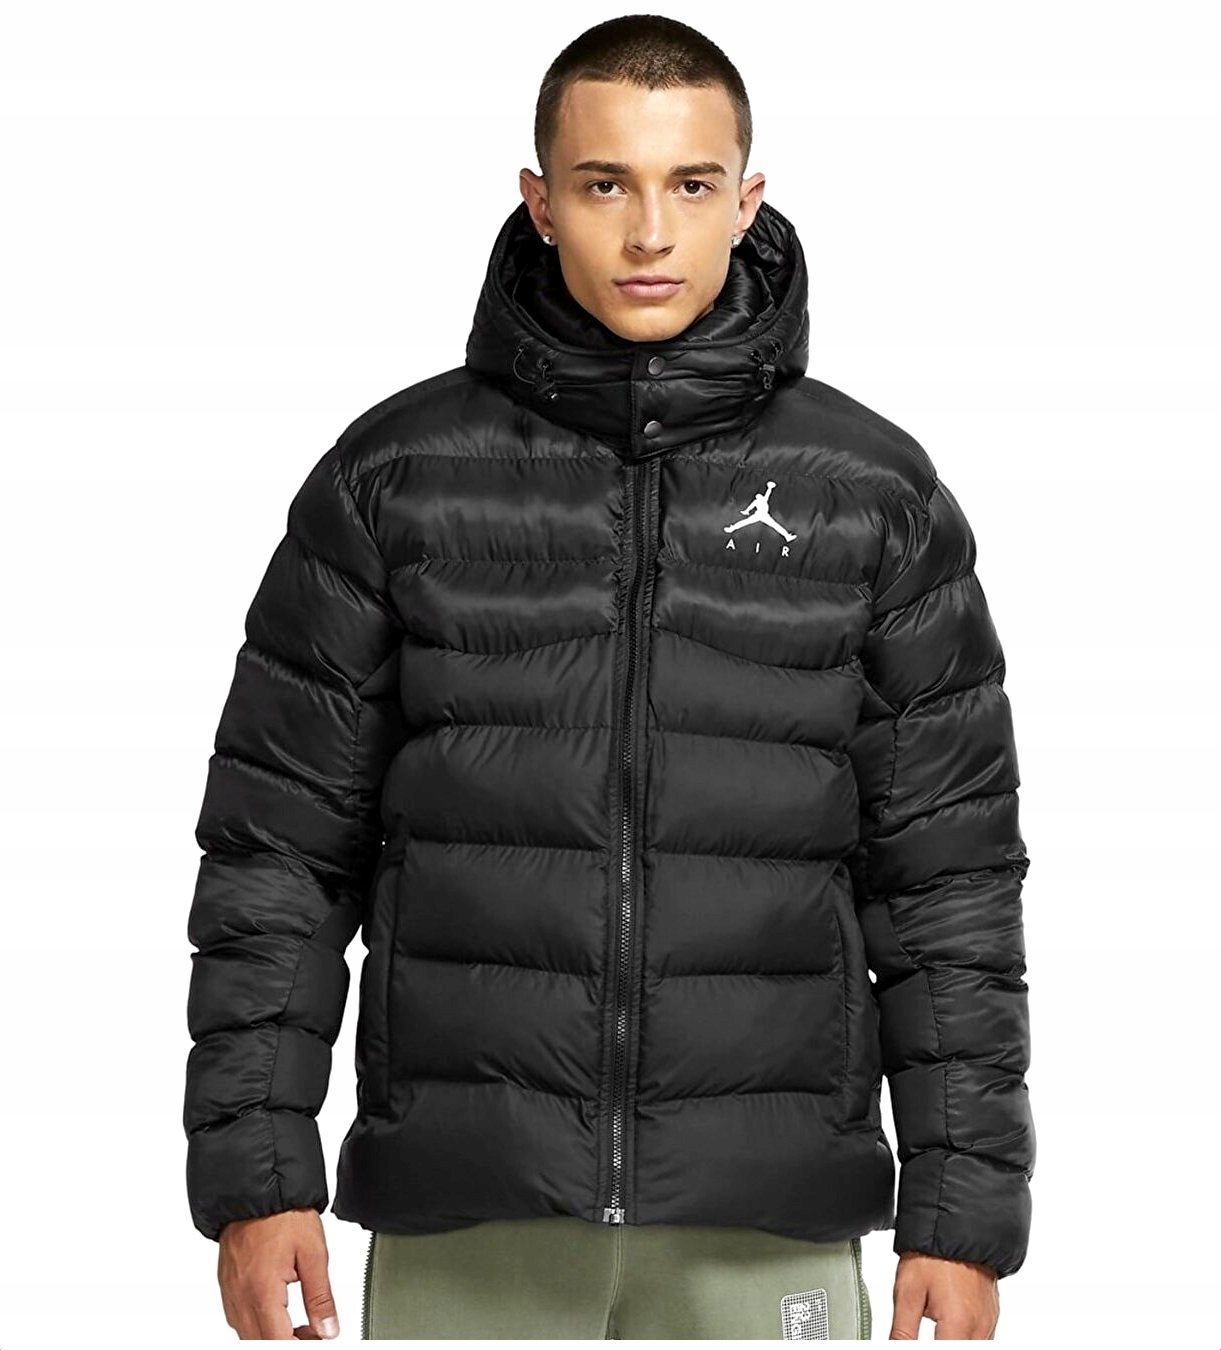 Nike Air JORDAN pánská zimní bunda s kapucí za 5367 Kč - Allegro